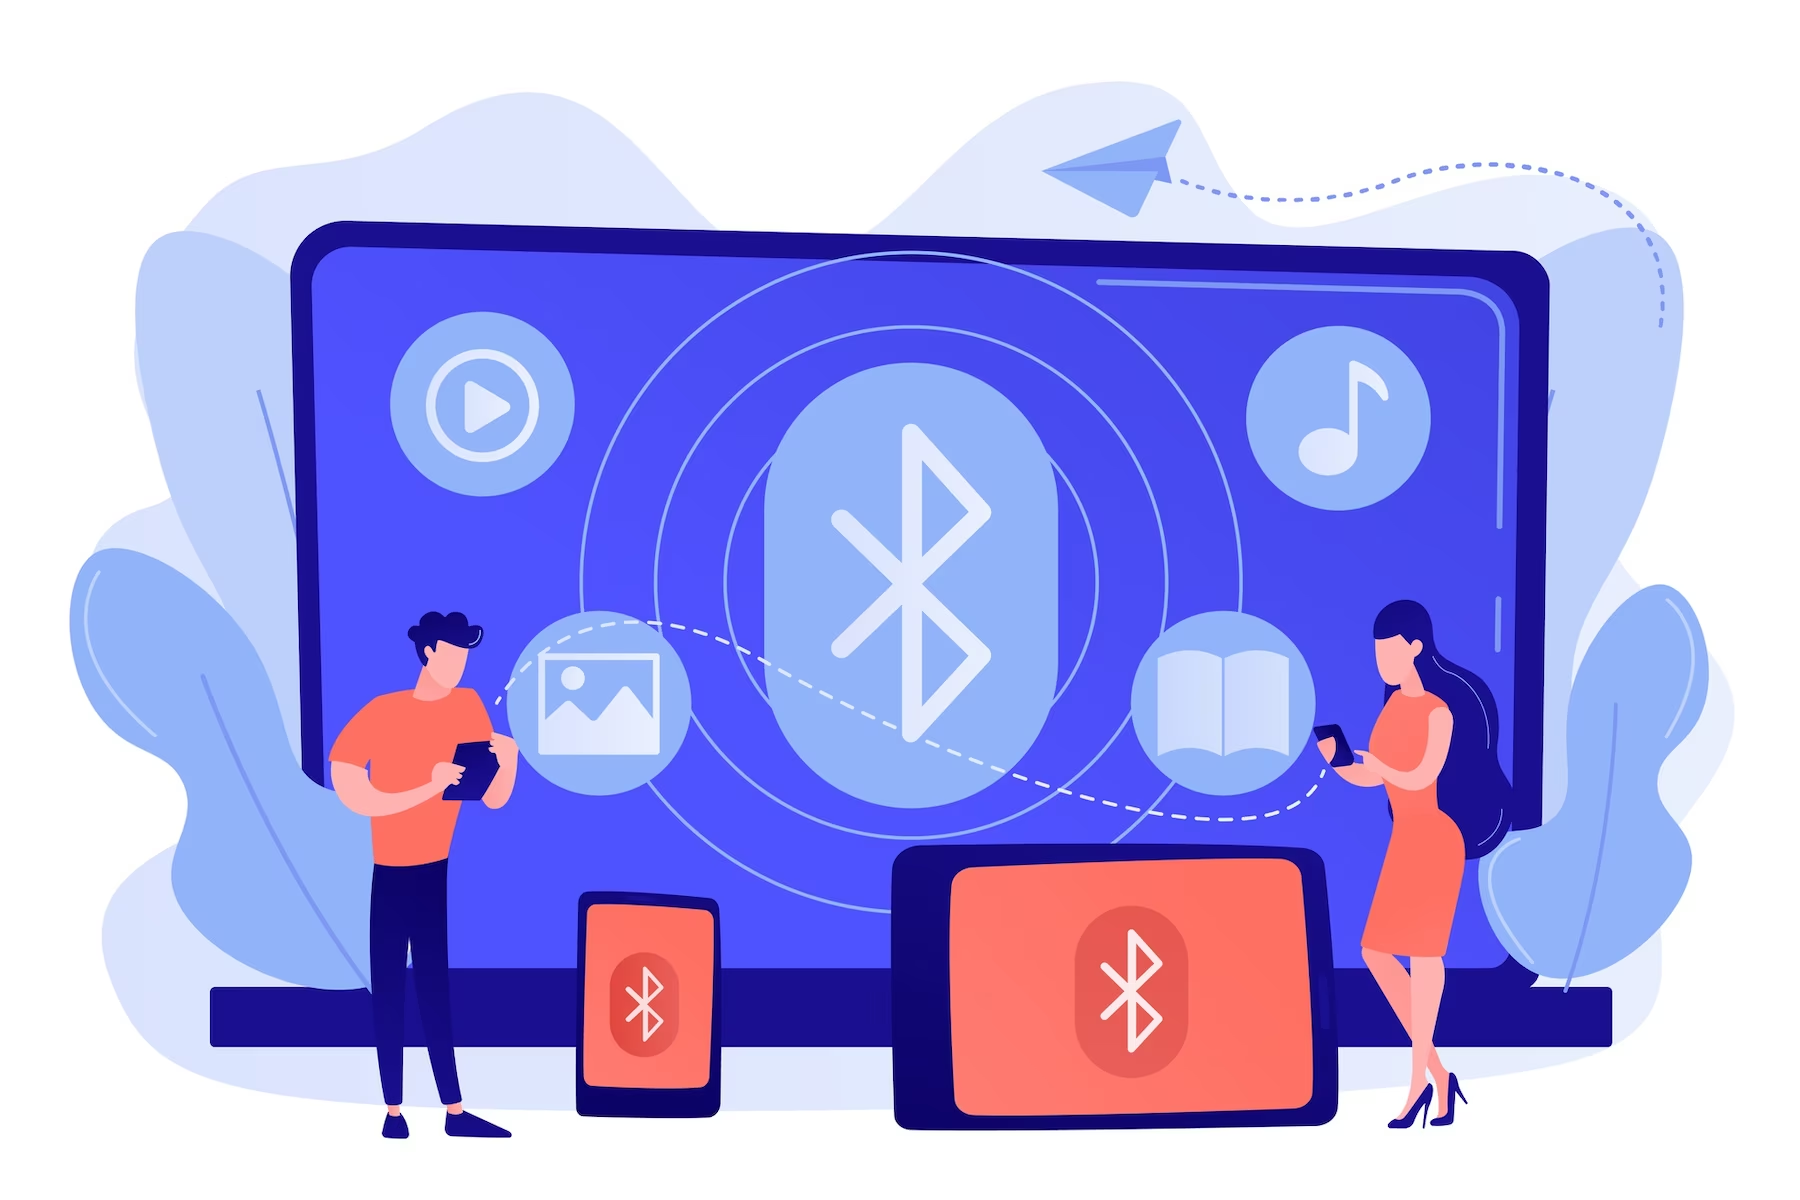 Etiquetas Bluetooth: cómo funcionan y qué pueden hacer